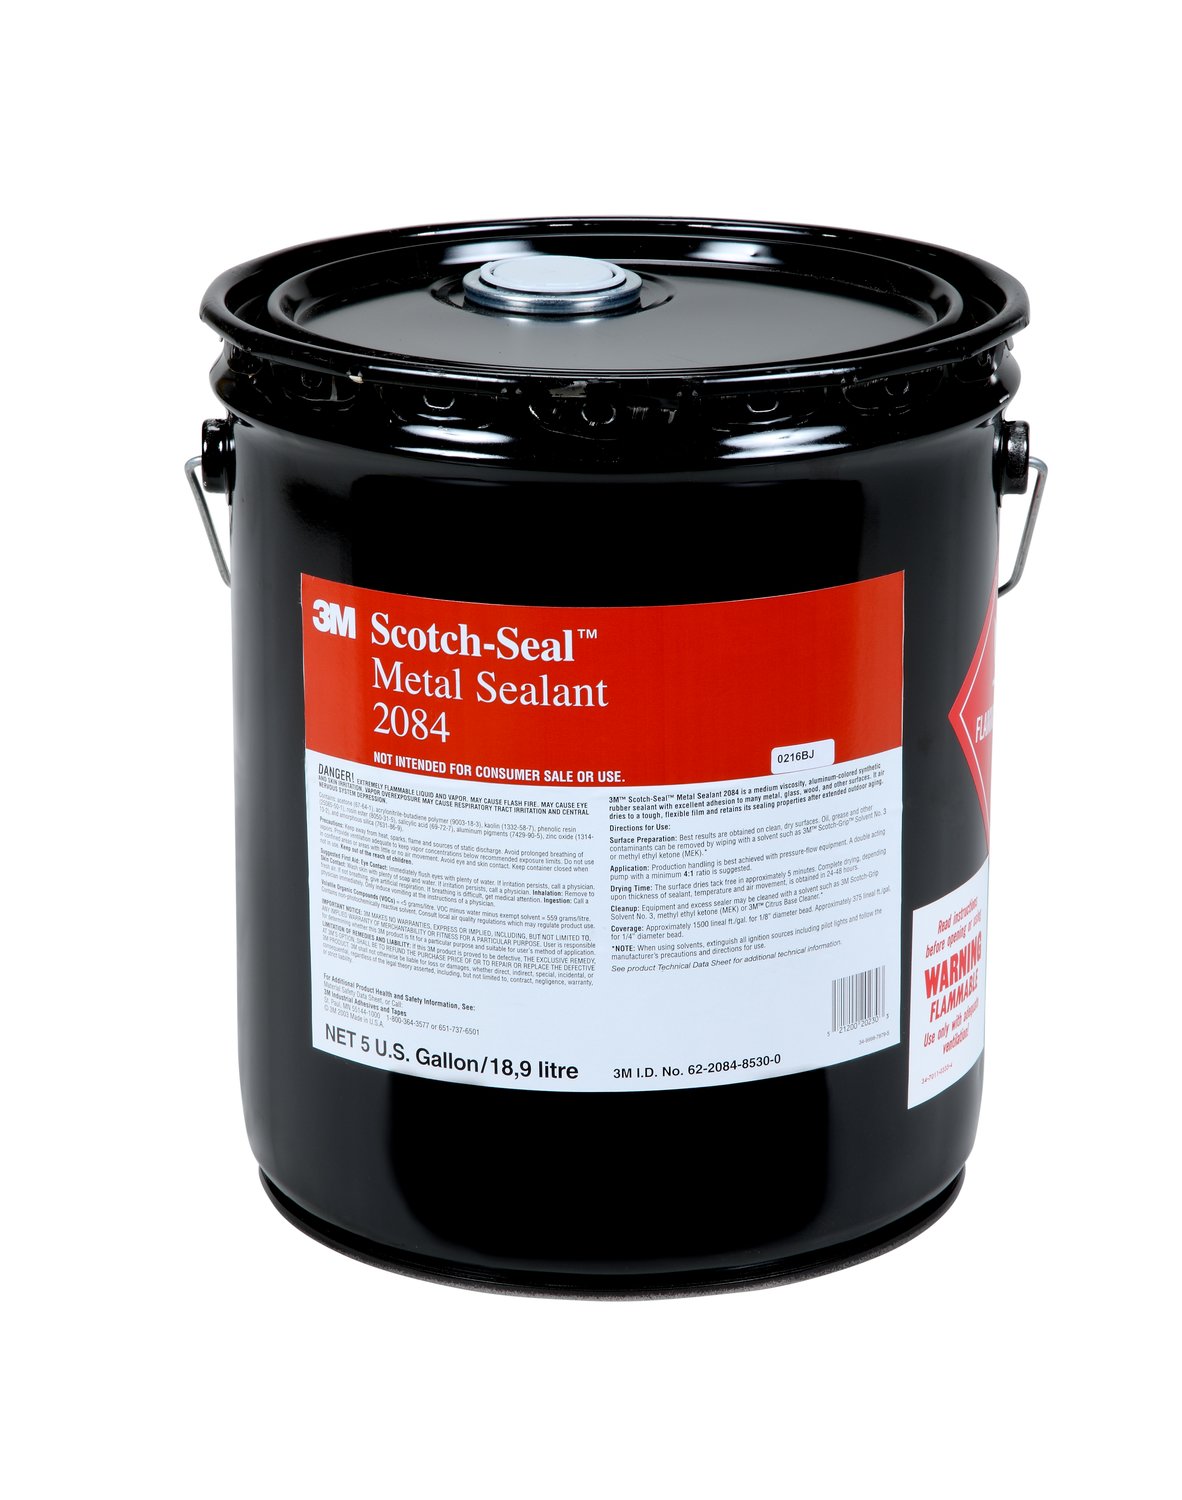 7000046344 - 3M Scotch-Seal Metal Sealant 2084, Silver, 5 Gallon (Pail), 1 Can/Case